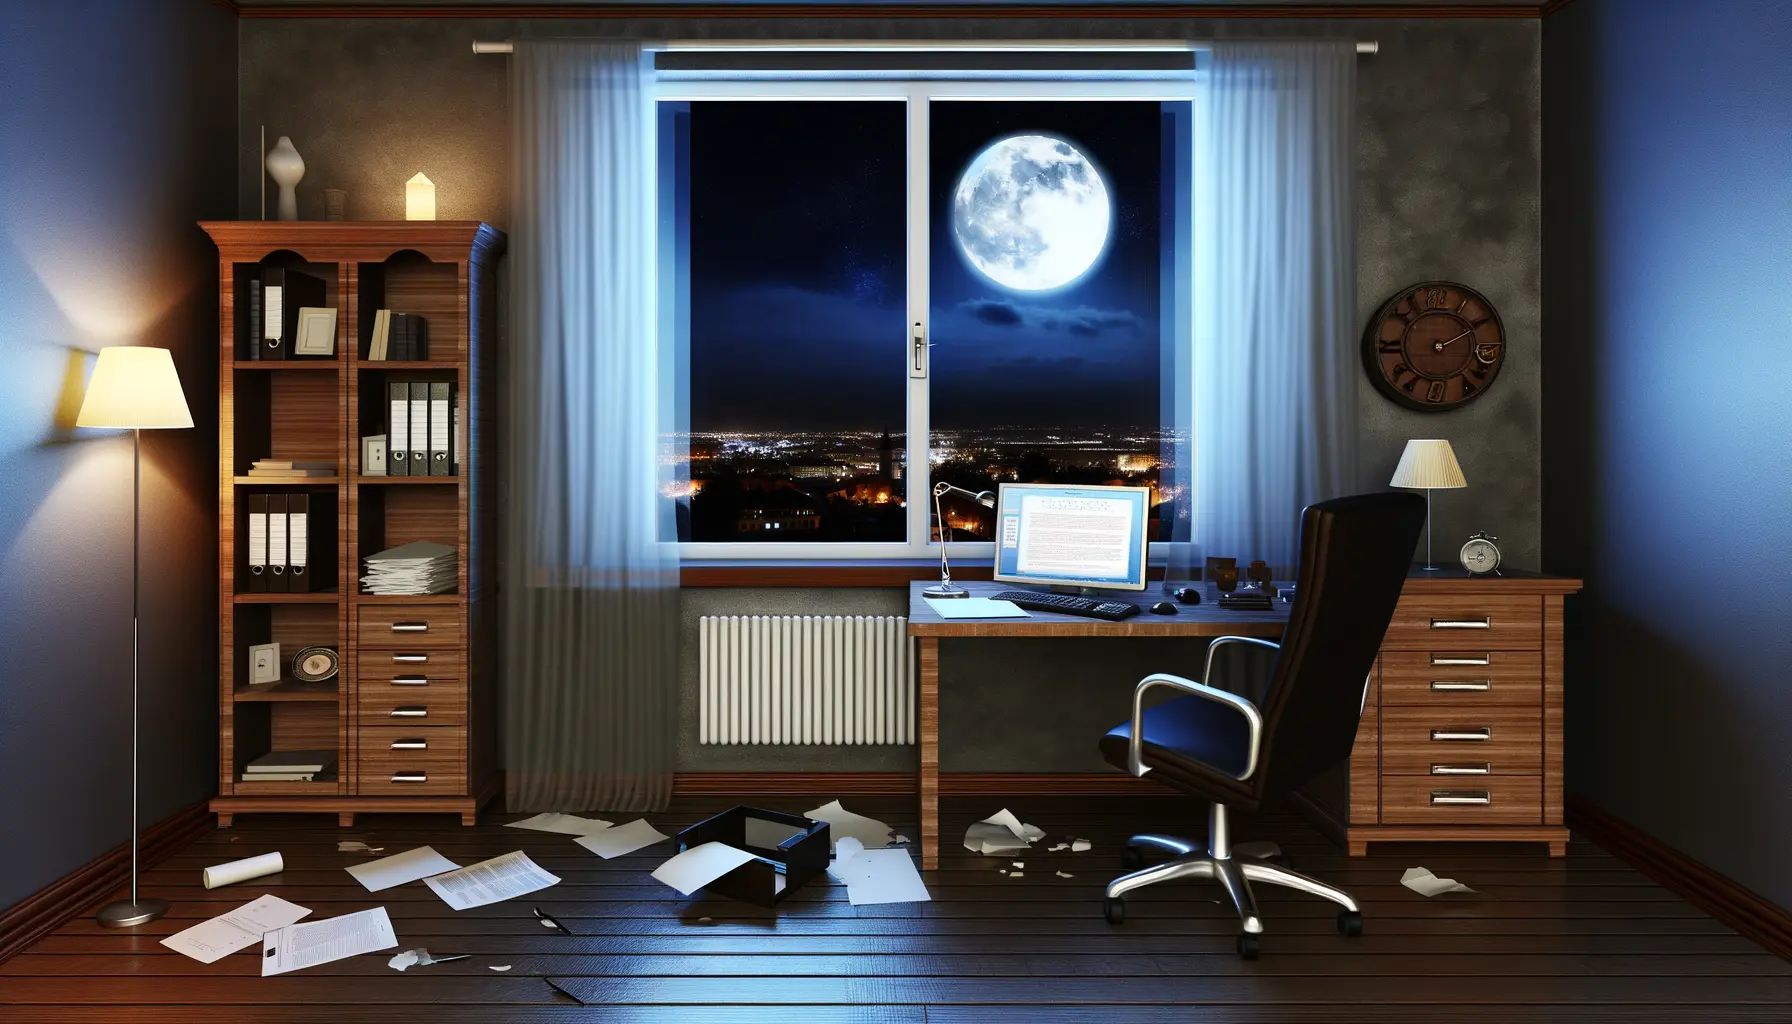 Atmosphärische Darstellung eines verlassenen Büros bei Nacht